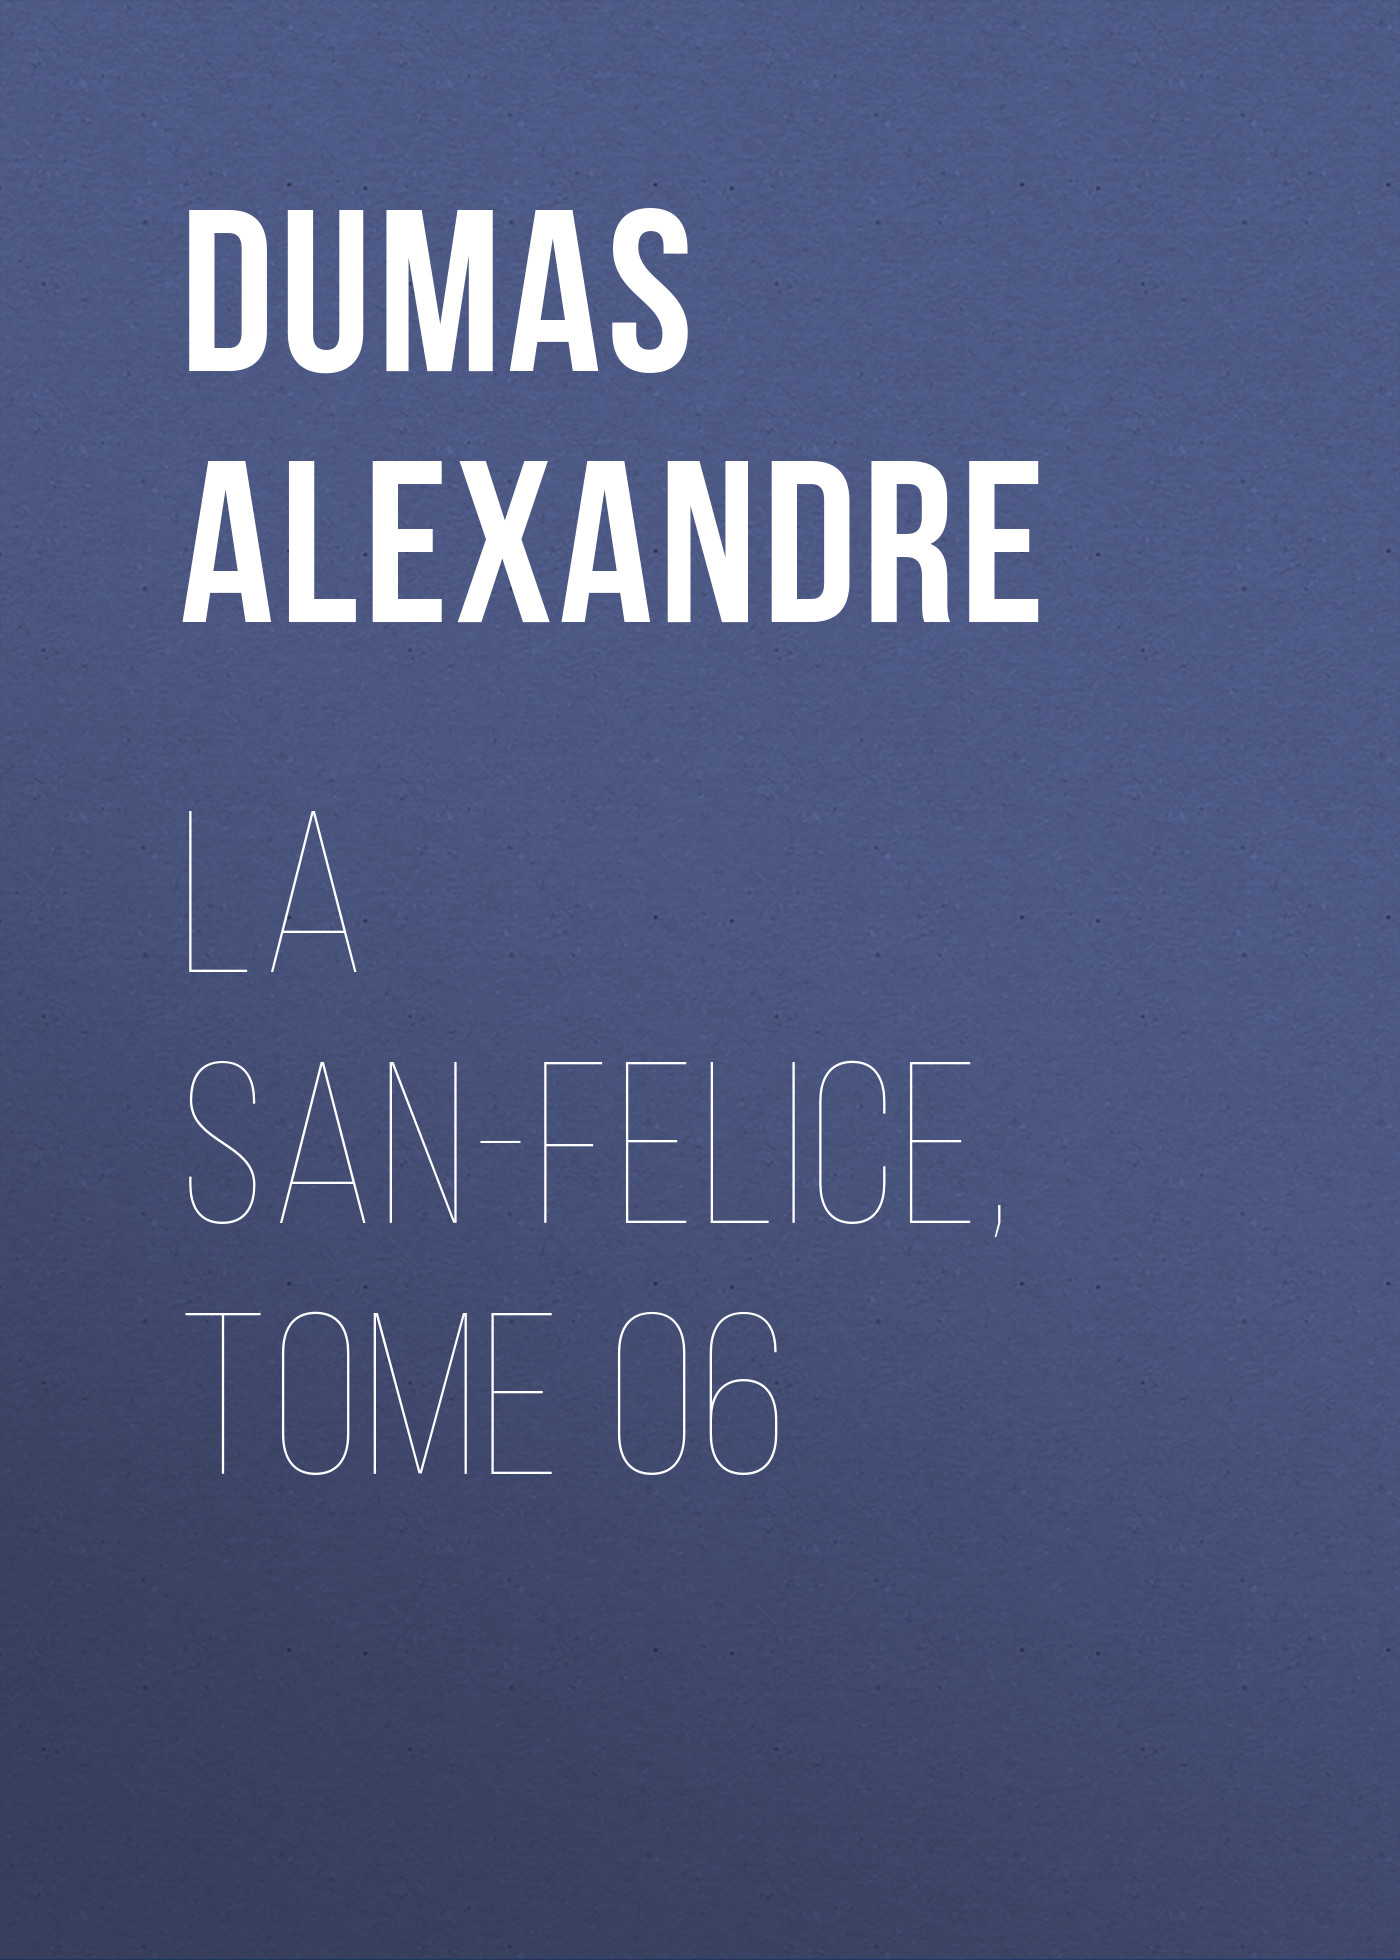 Книга La San-Felice, Tome 06 из серии , созданная Alexandre Dumas, может относится к жанру Литература 19 века, Зарубежная старинная литература, Зарубежная классика. Стоимость электронной книги La San-Felice, Tome 06 с идентификатором 25203471 составляет 0 руб.